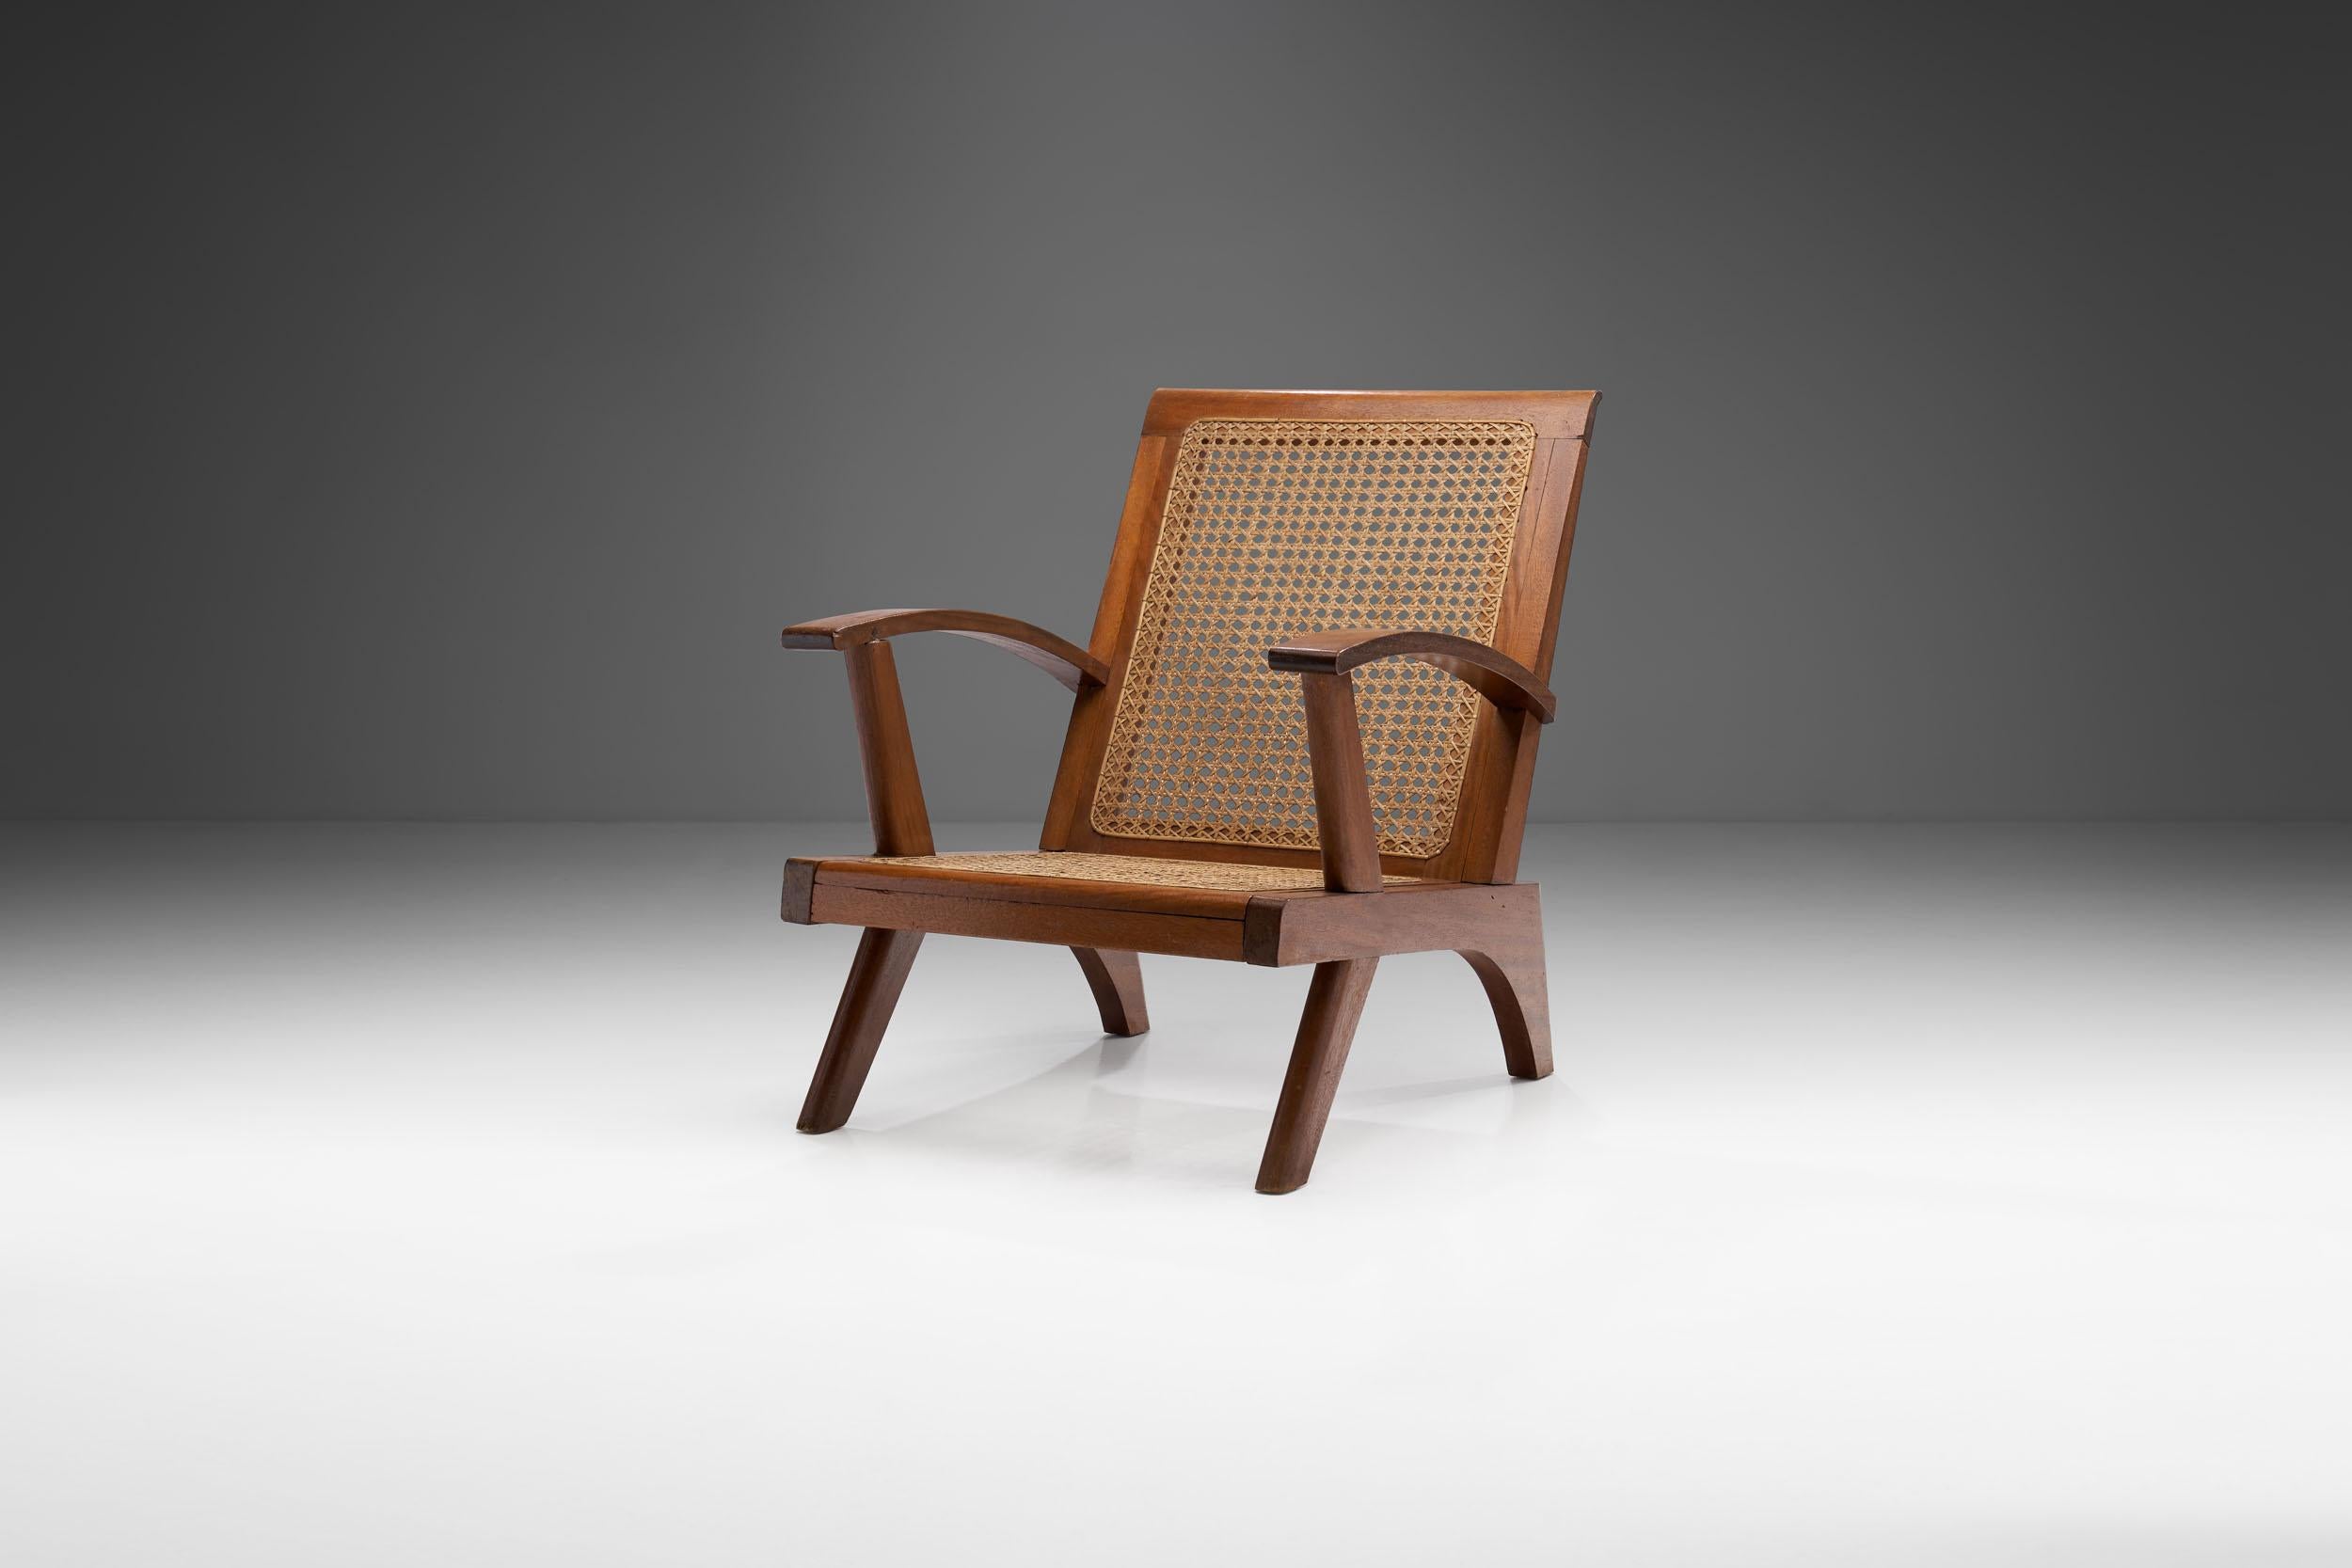 Dieser französische Sessel aus der Mitte des Jahrhunderts verbindet eine optisch beeindruckende Struktur mit einer fachmännischen Caning-Technik und hochwertigen Materialien. 

Wie im Vereinigten Königreich und in weiten Teilen Europas gab es auch